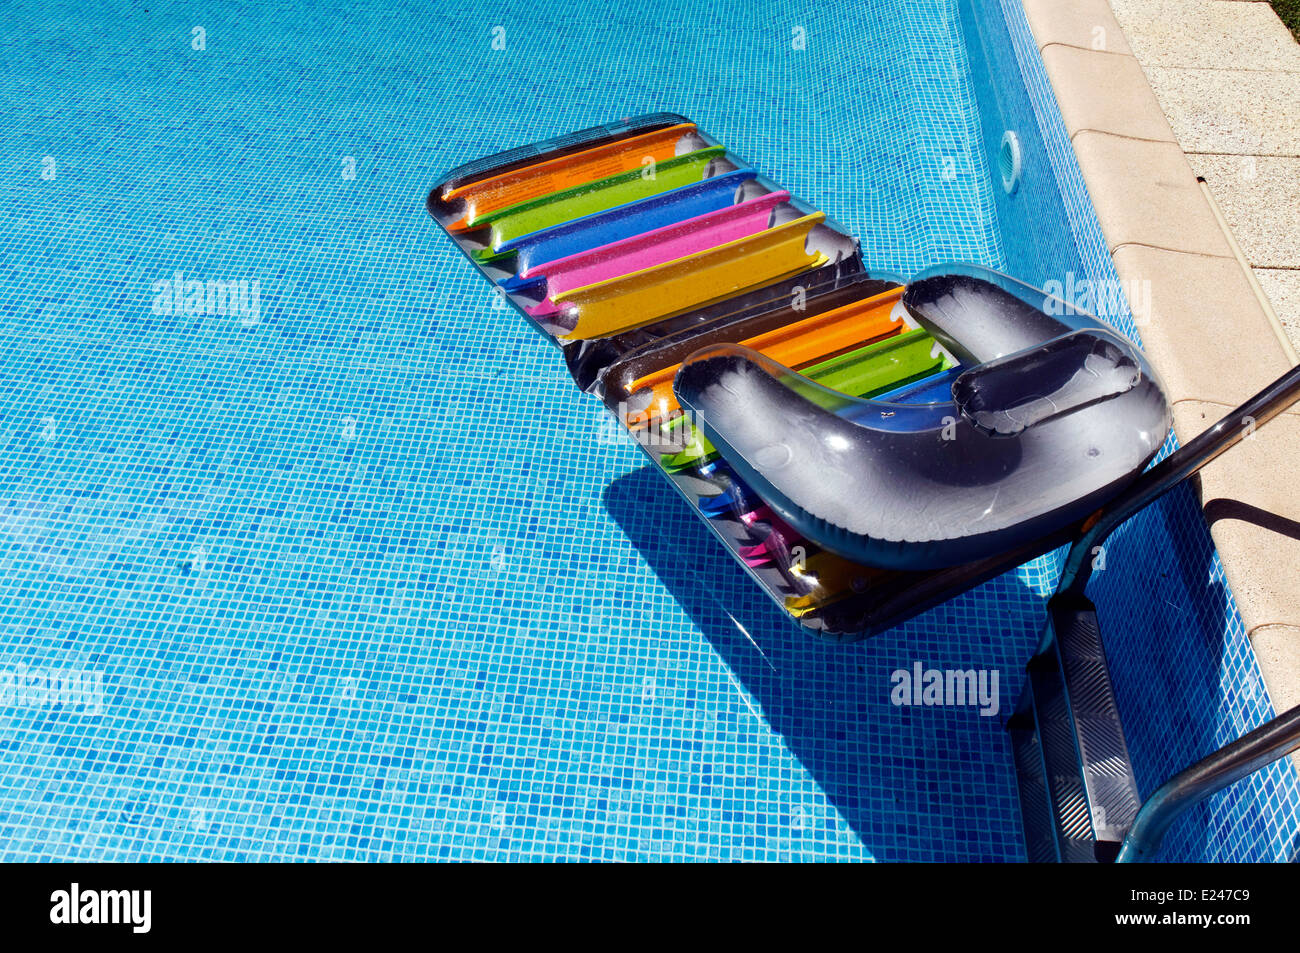 Une chaise longue flottante dans une piscine Photo Stock - Alamy